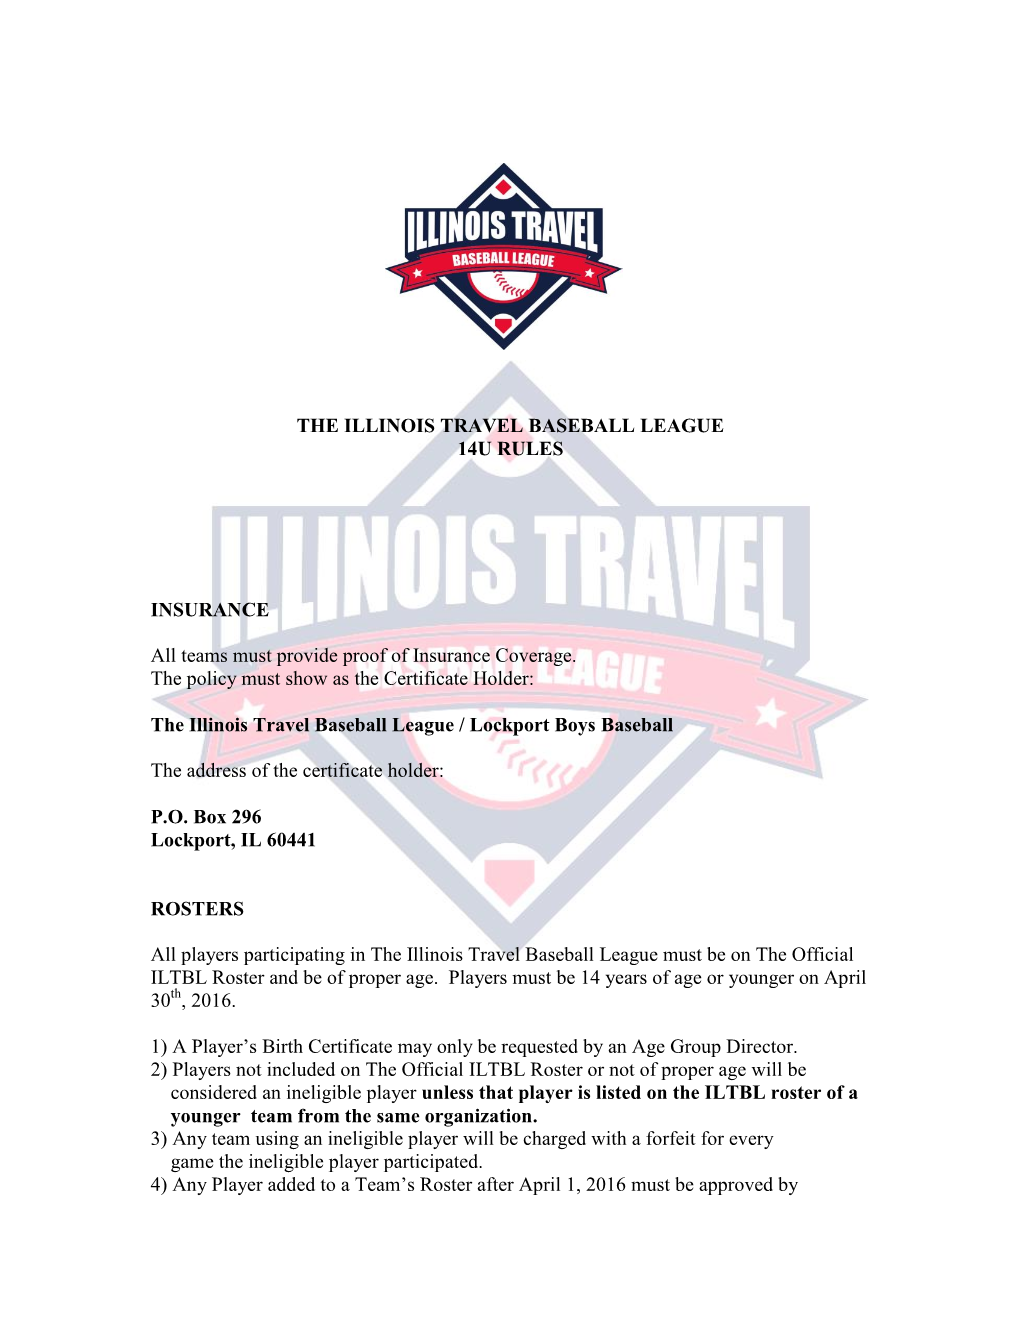 The Illinois Travel Baseball League 14U Rules